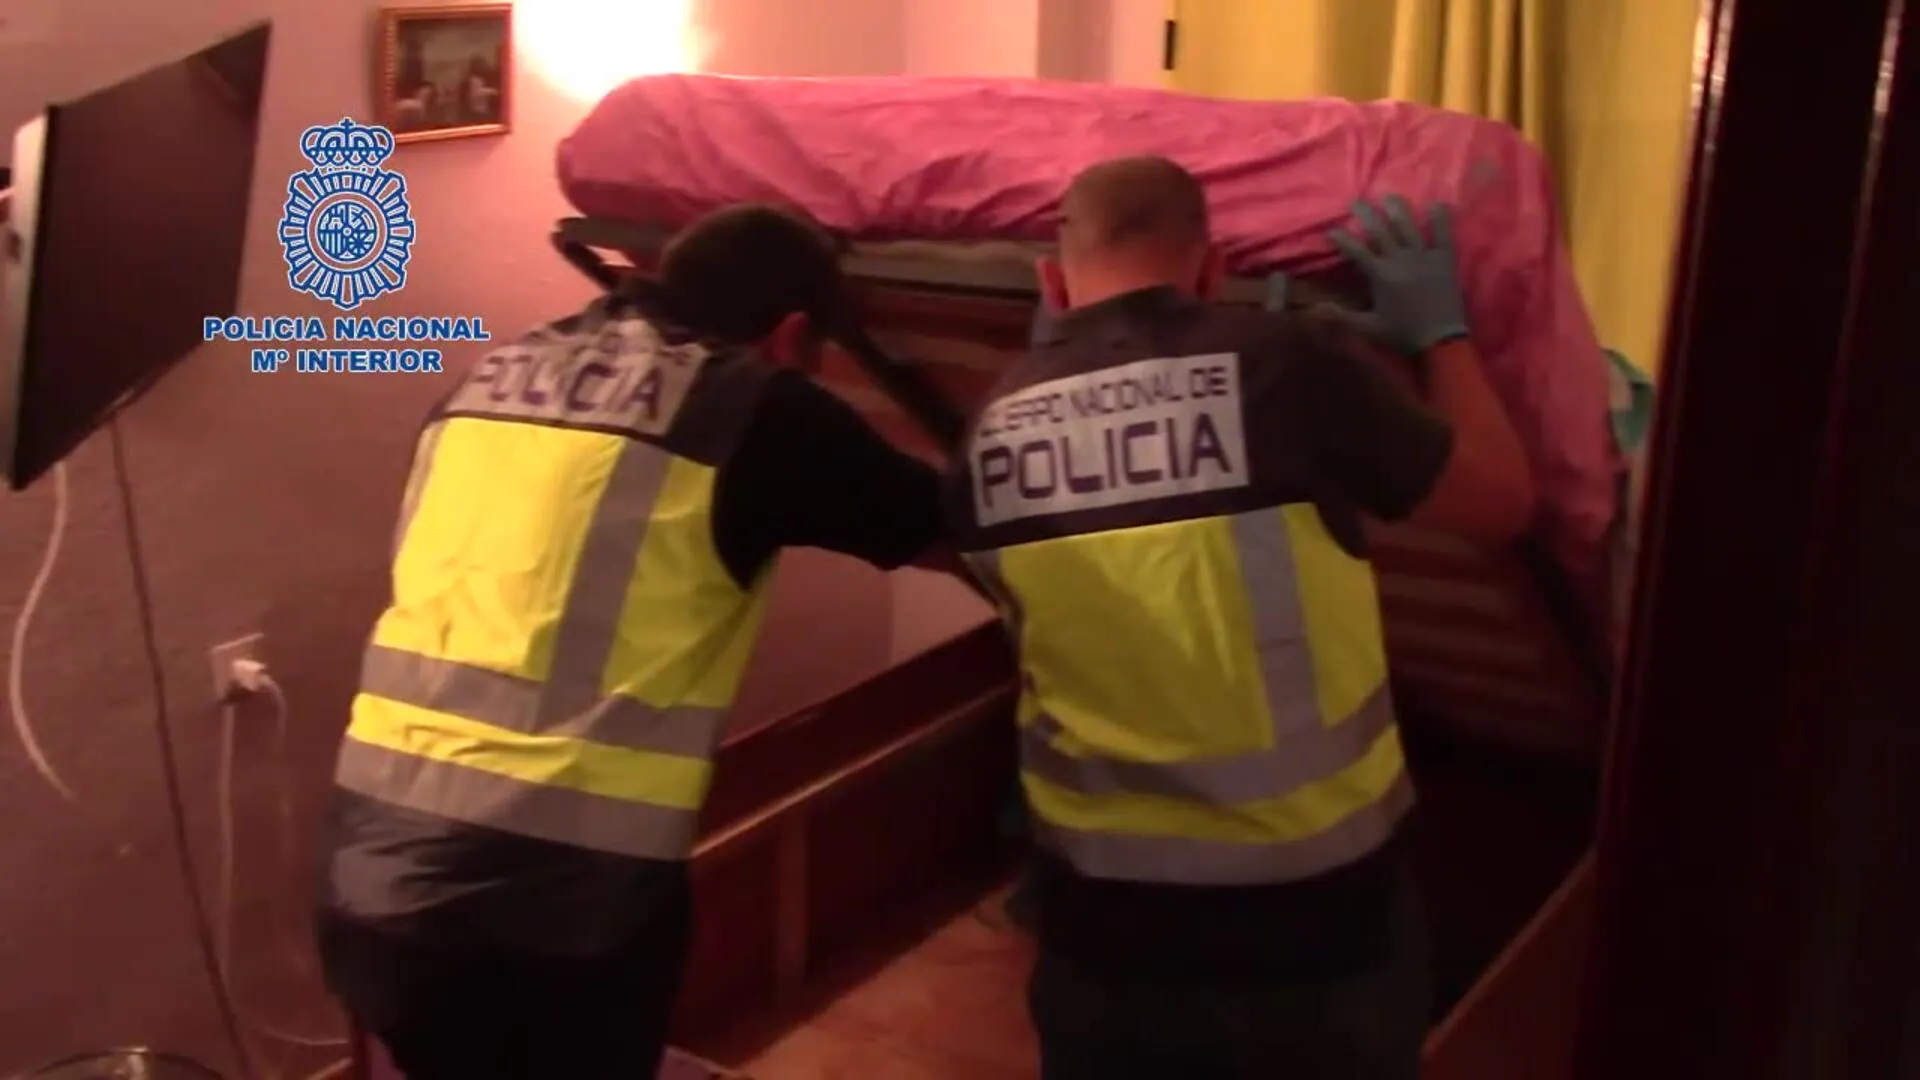 Liberadas en Vélez-Málaga siete víctimas de explotación sexual sometidas a vigilancia con cámaras ocultas